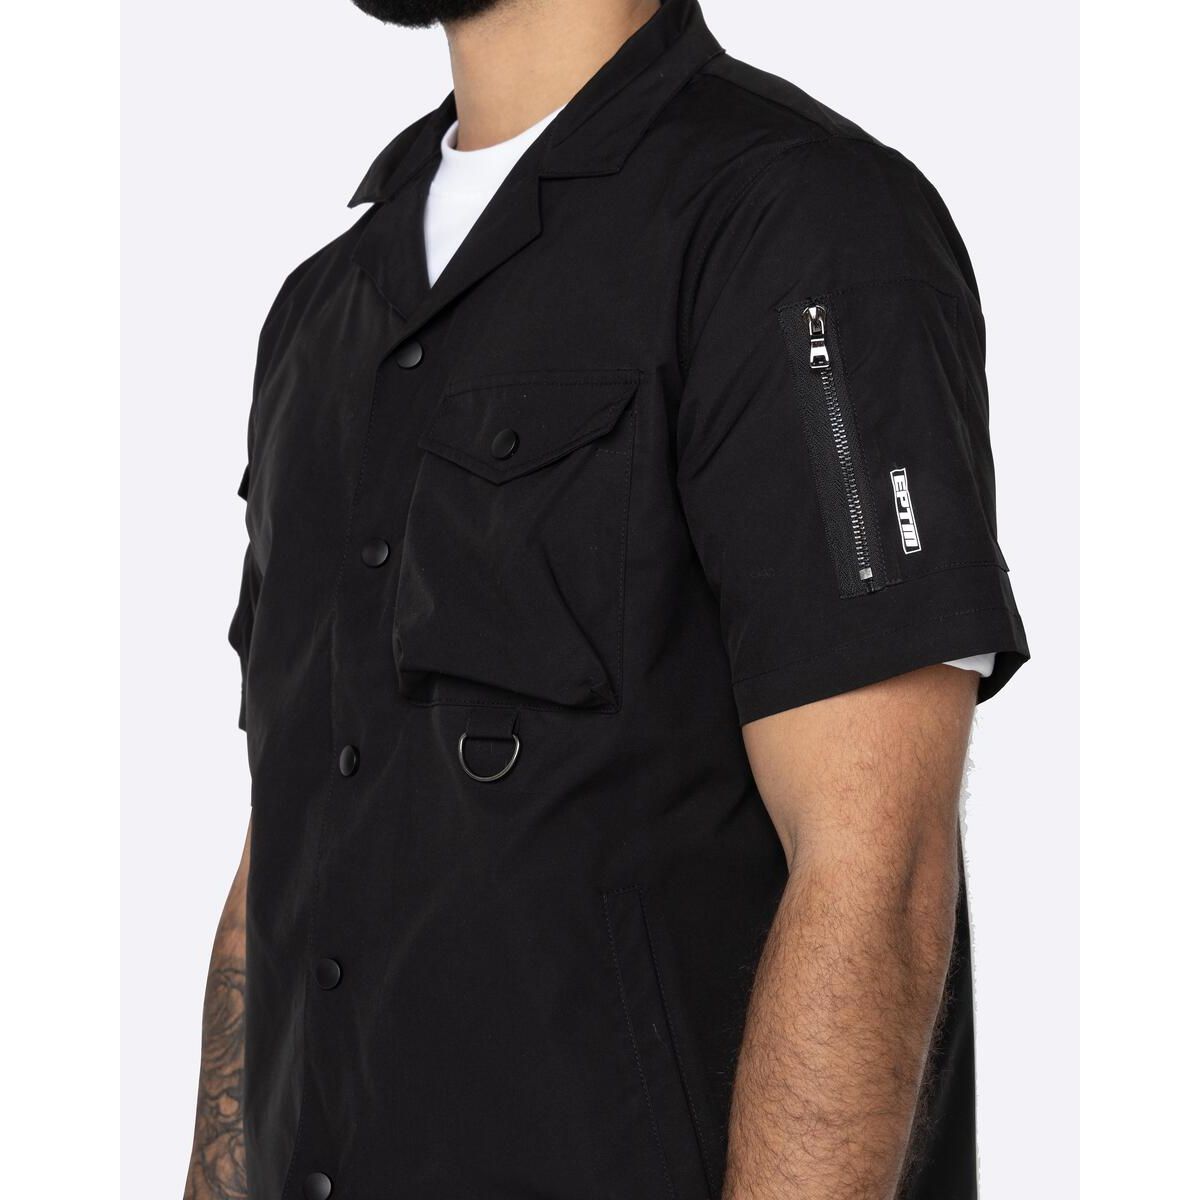 EPTM Snap Button Shirt - Black (EP10415)